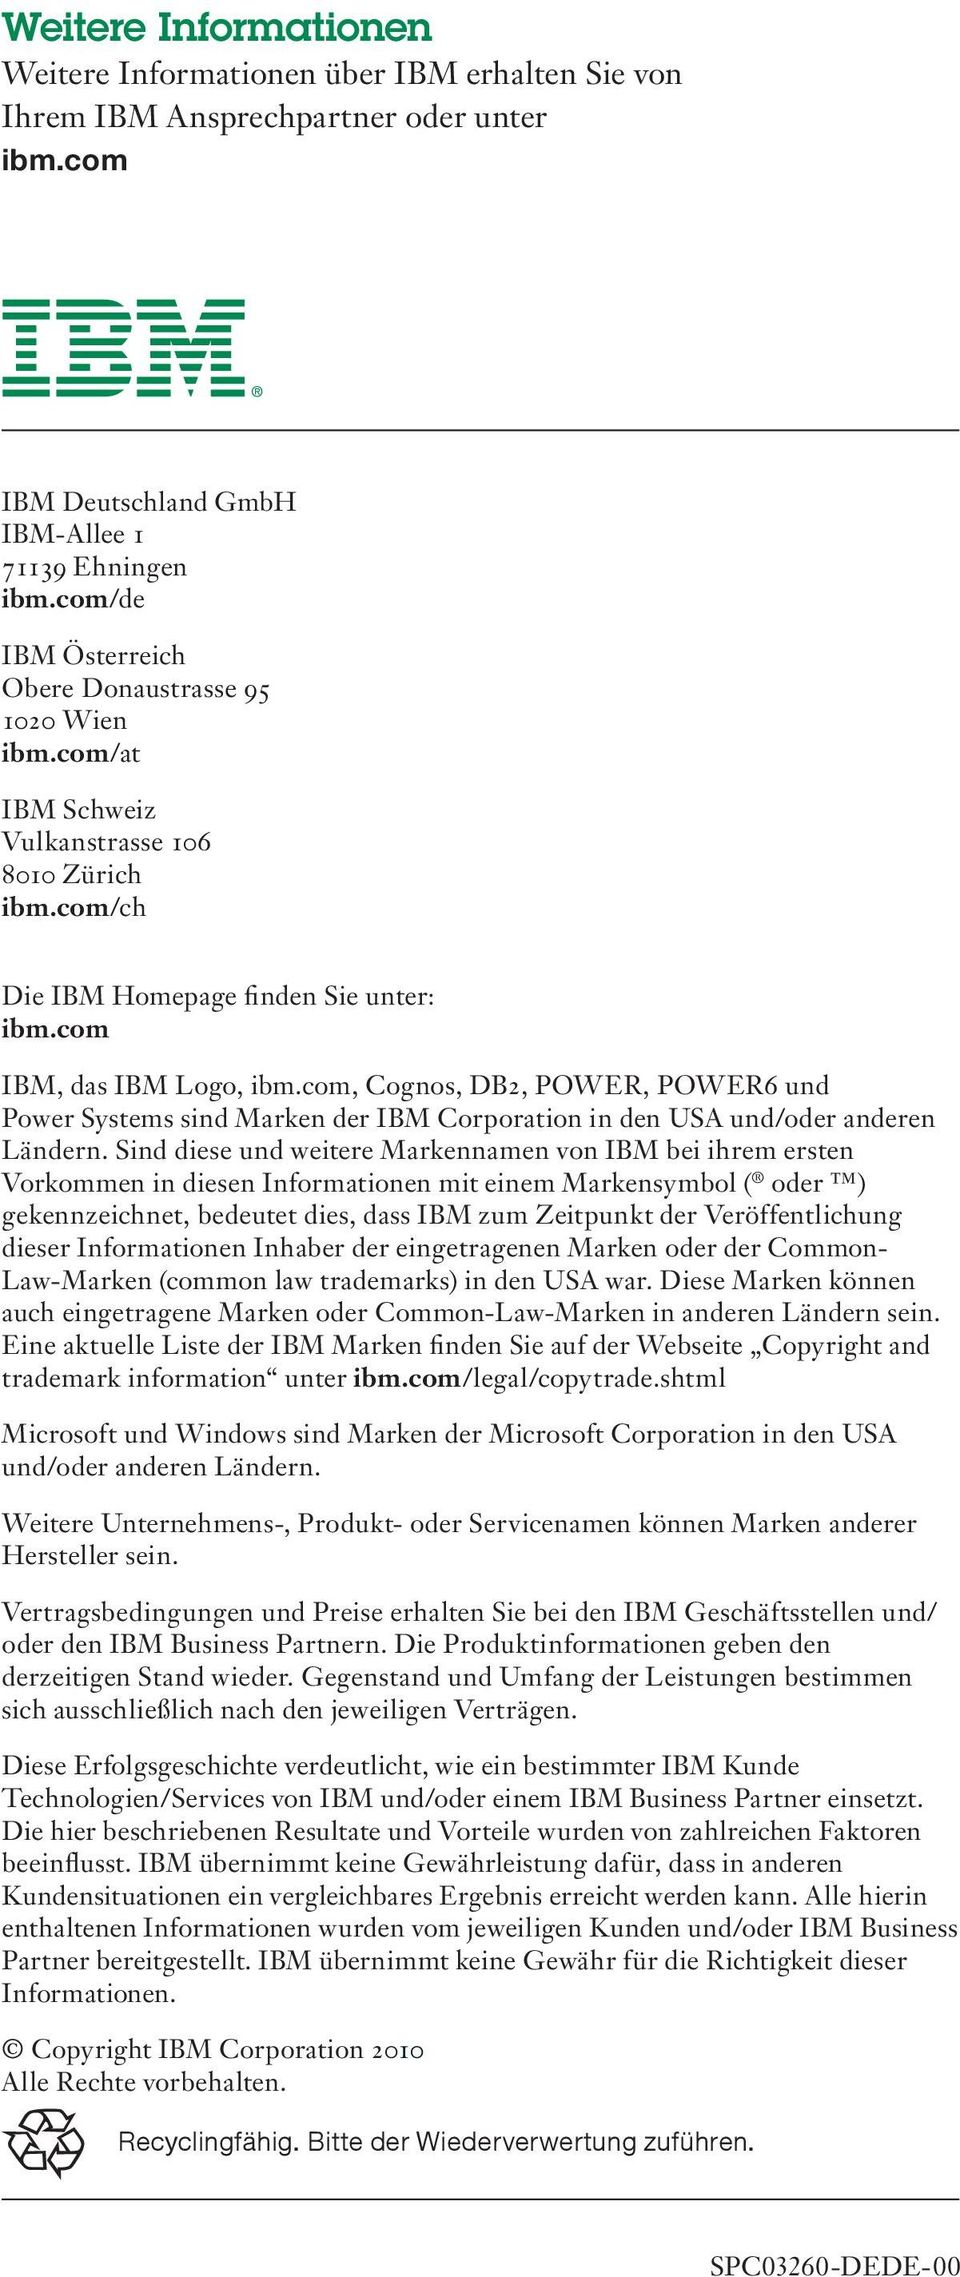 com, Cognos, DB2, POWER, POWER6 und Power Systems sind Marken der IBM Corporation in den USA und/oder anderen Ländern.